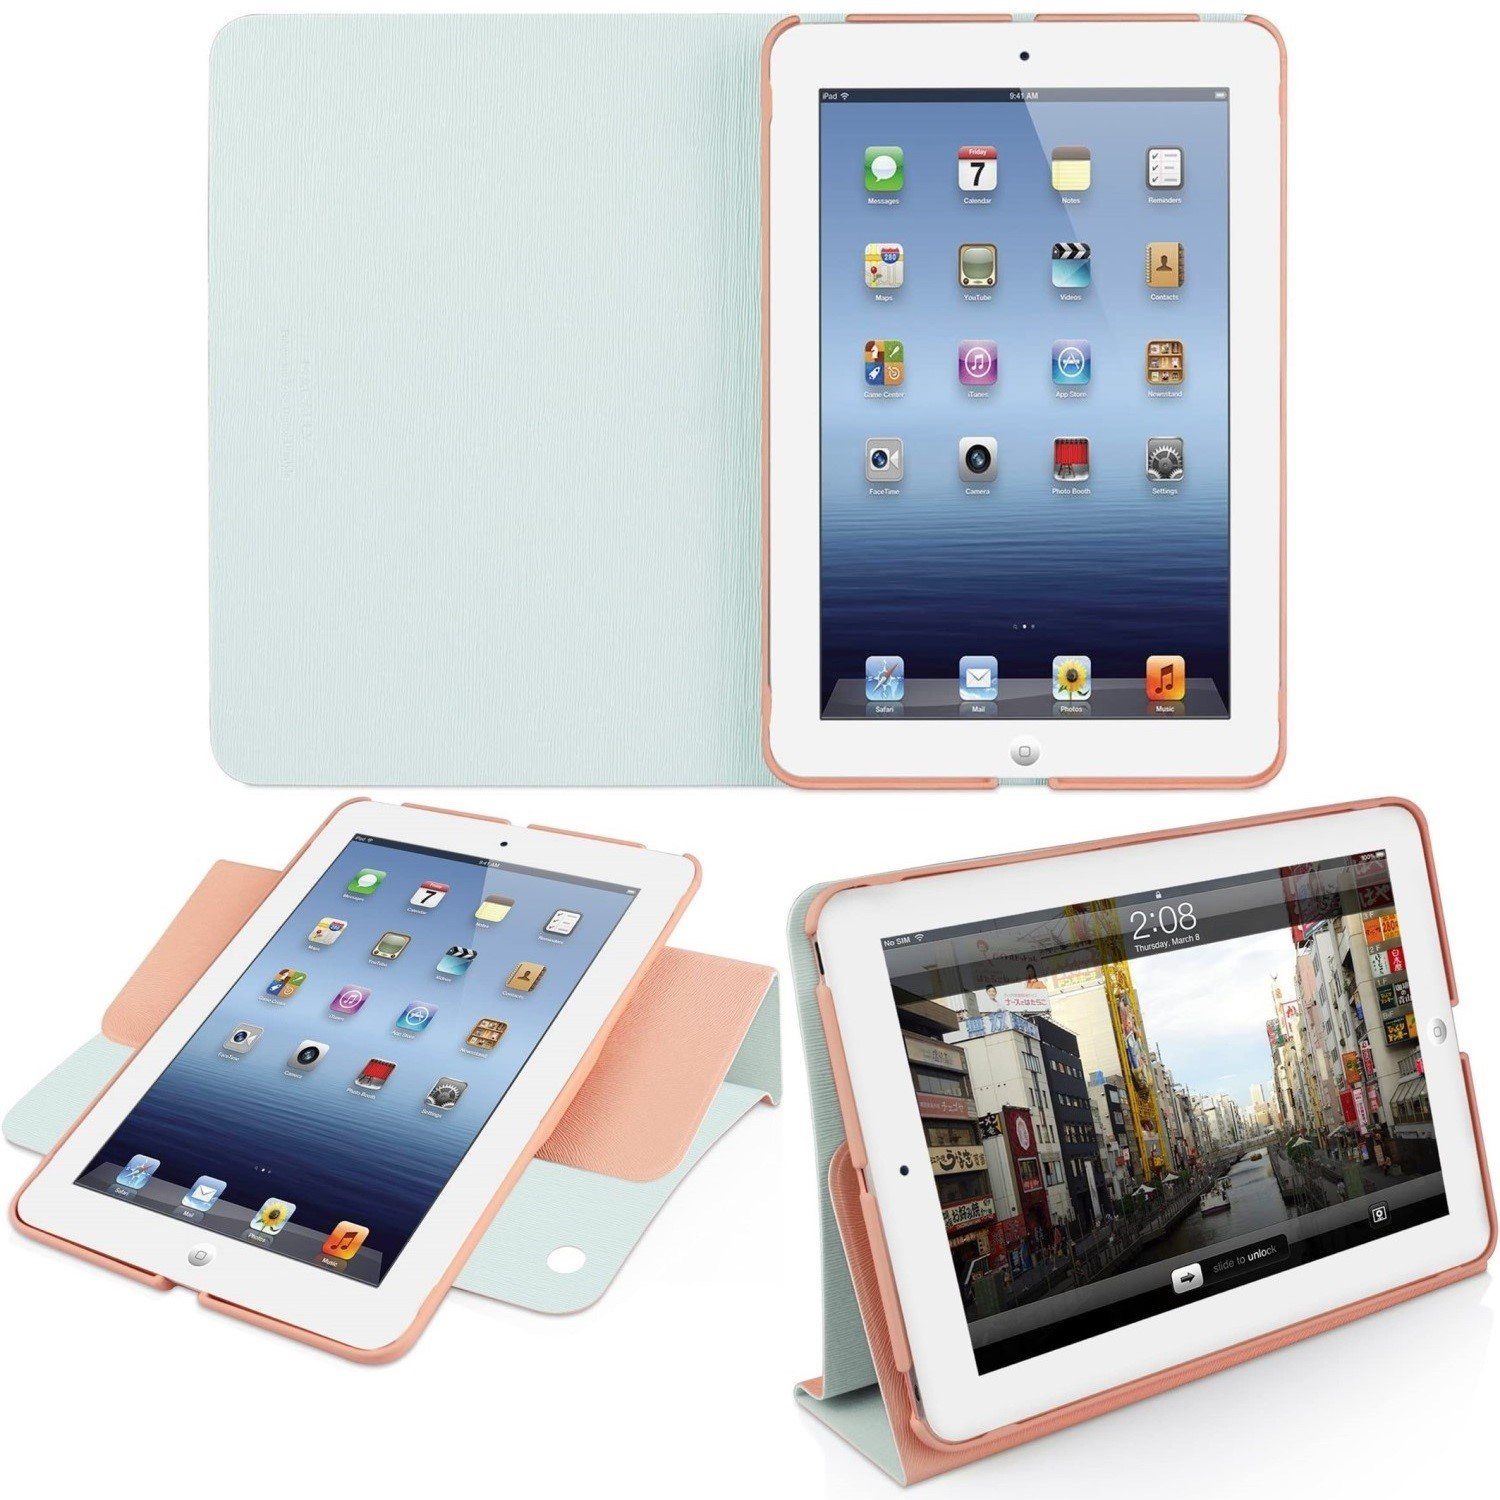 Macally Tablet-Hülle Klapp-Tasche Cover Ständer Schutz-Hülle Rosa, Smart  Folio für Apple iPad mini 1 2 3 Gen, Stand-Funktion, leicht